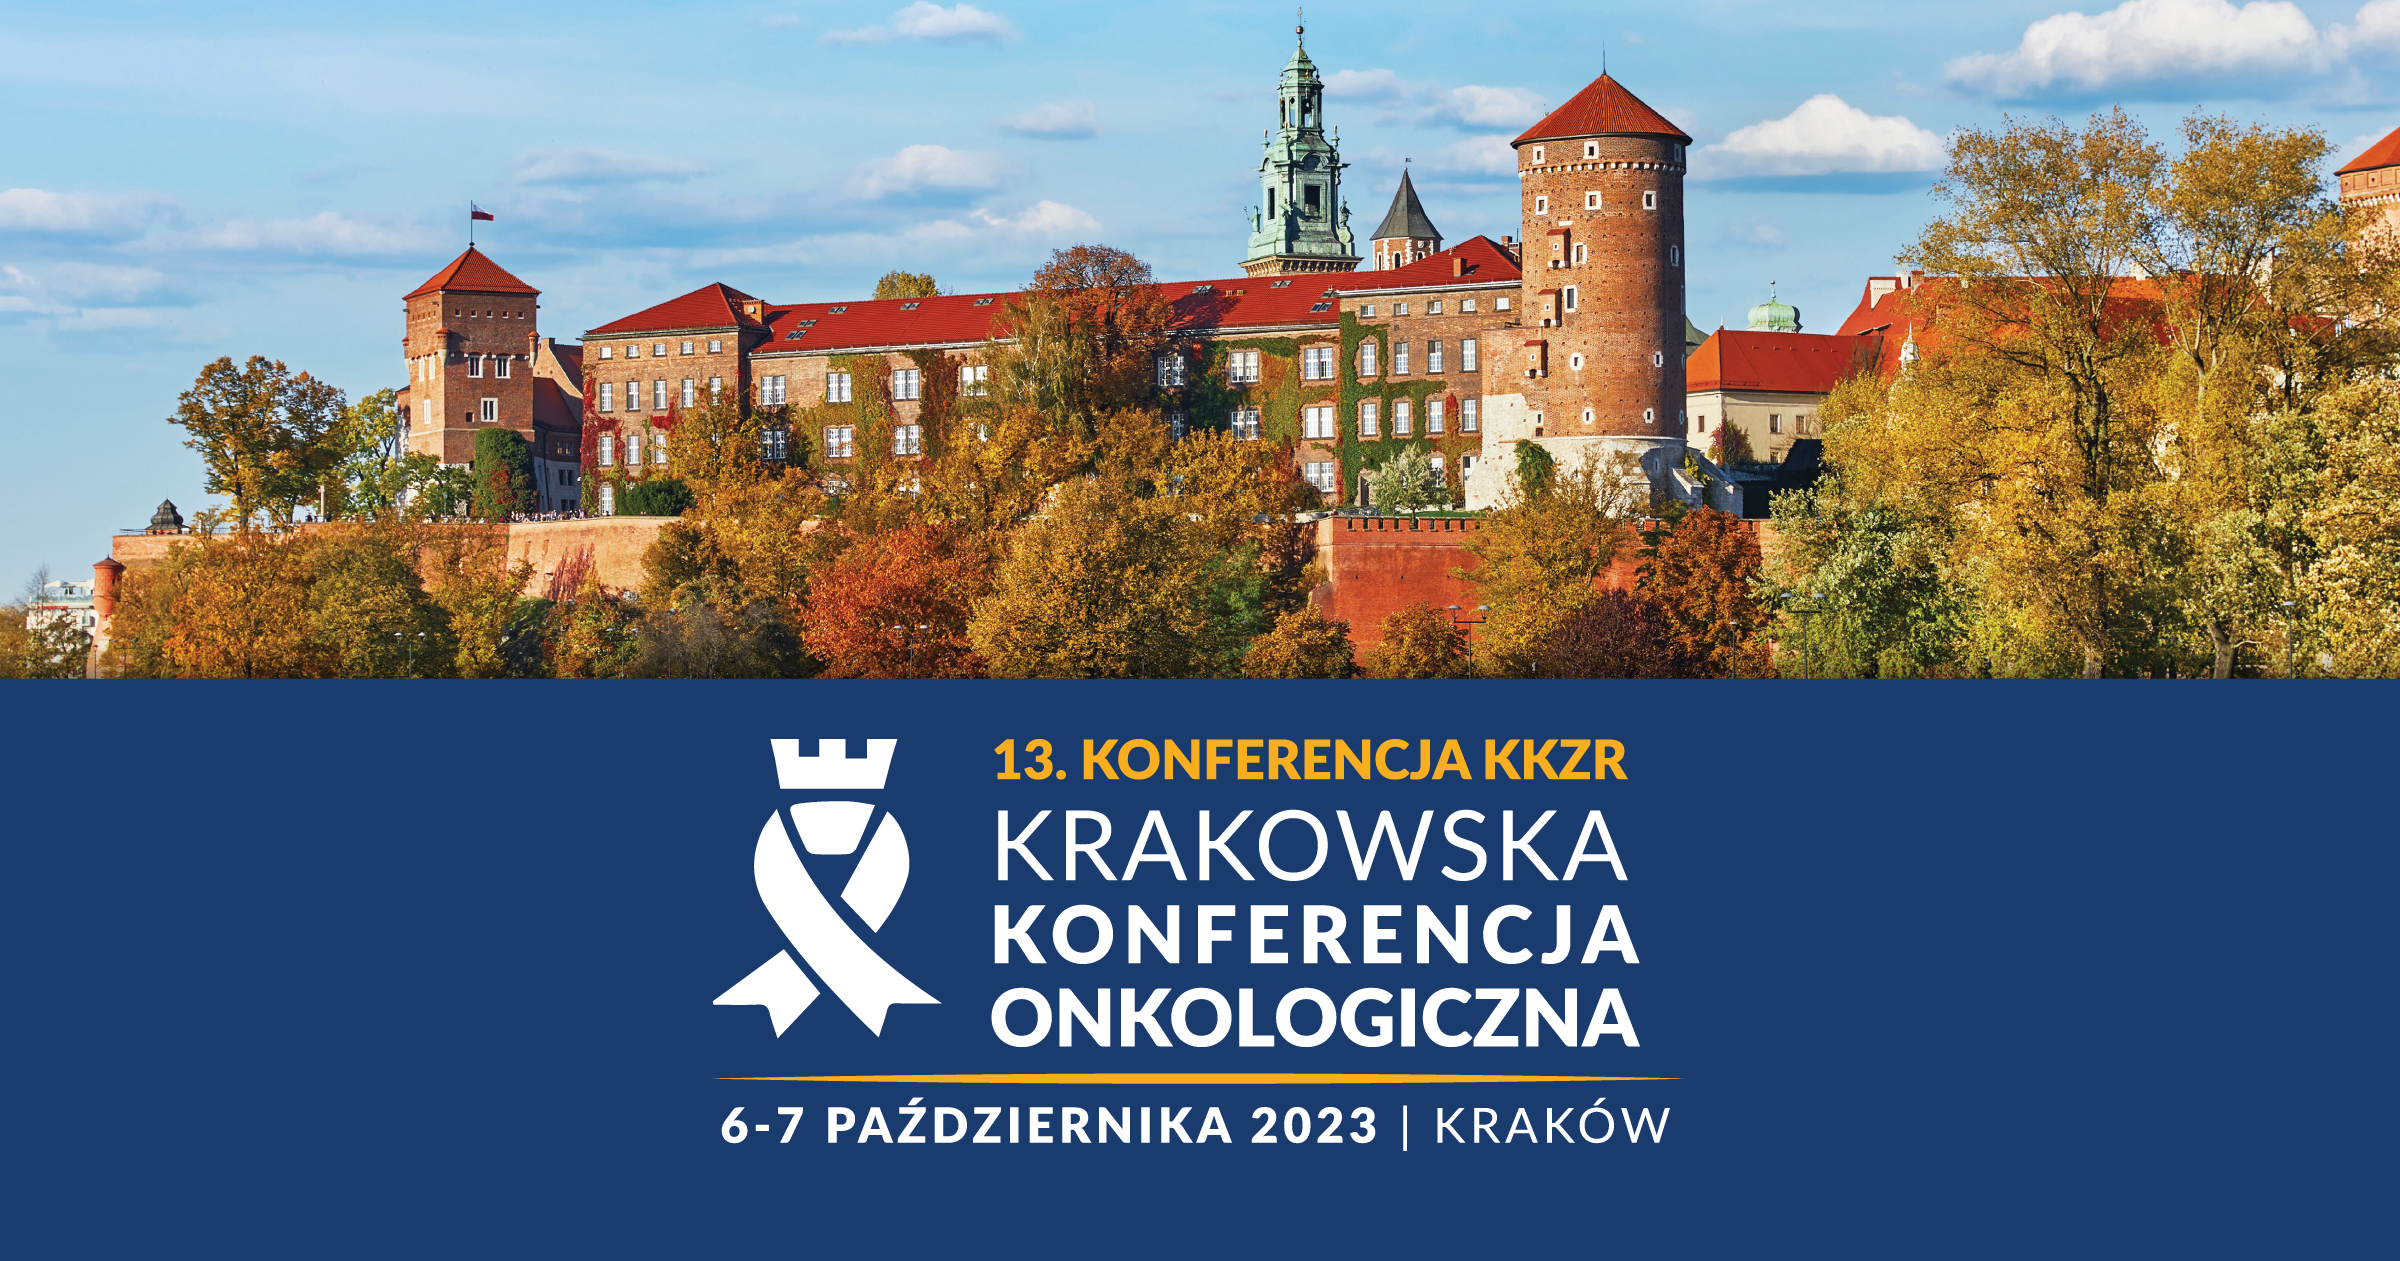 13. KONFERENCJA KKZR Krakowska Konferencja Onkologiczna 6-7 października 2023 | Kraków